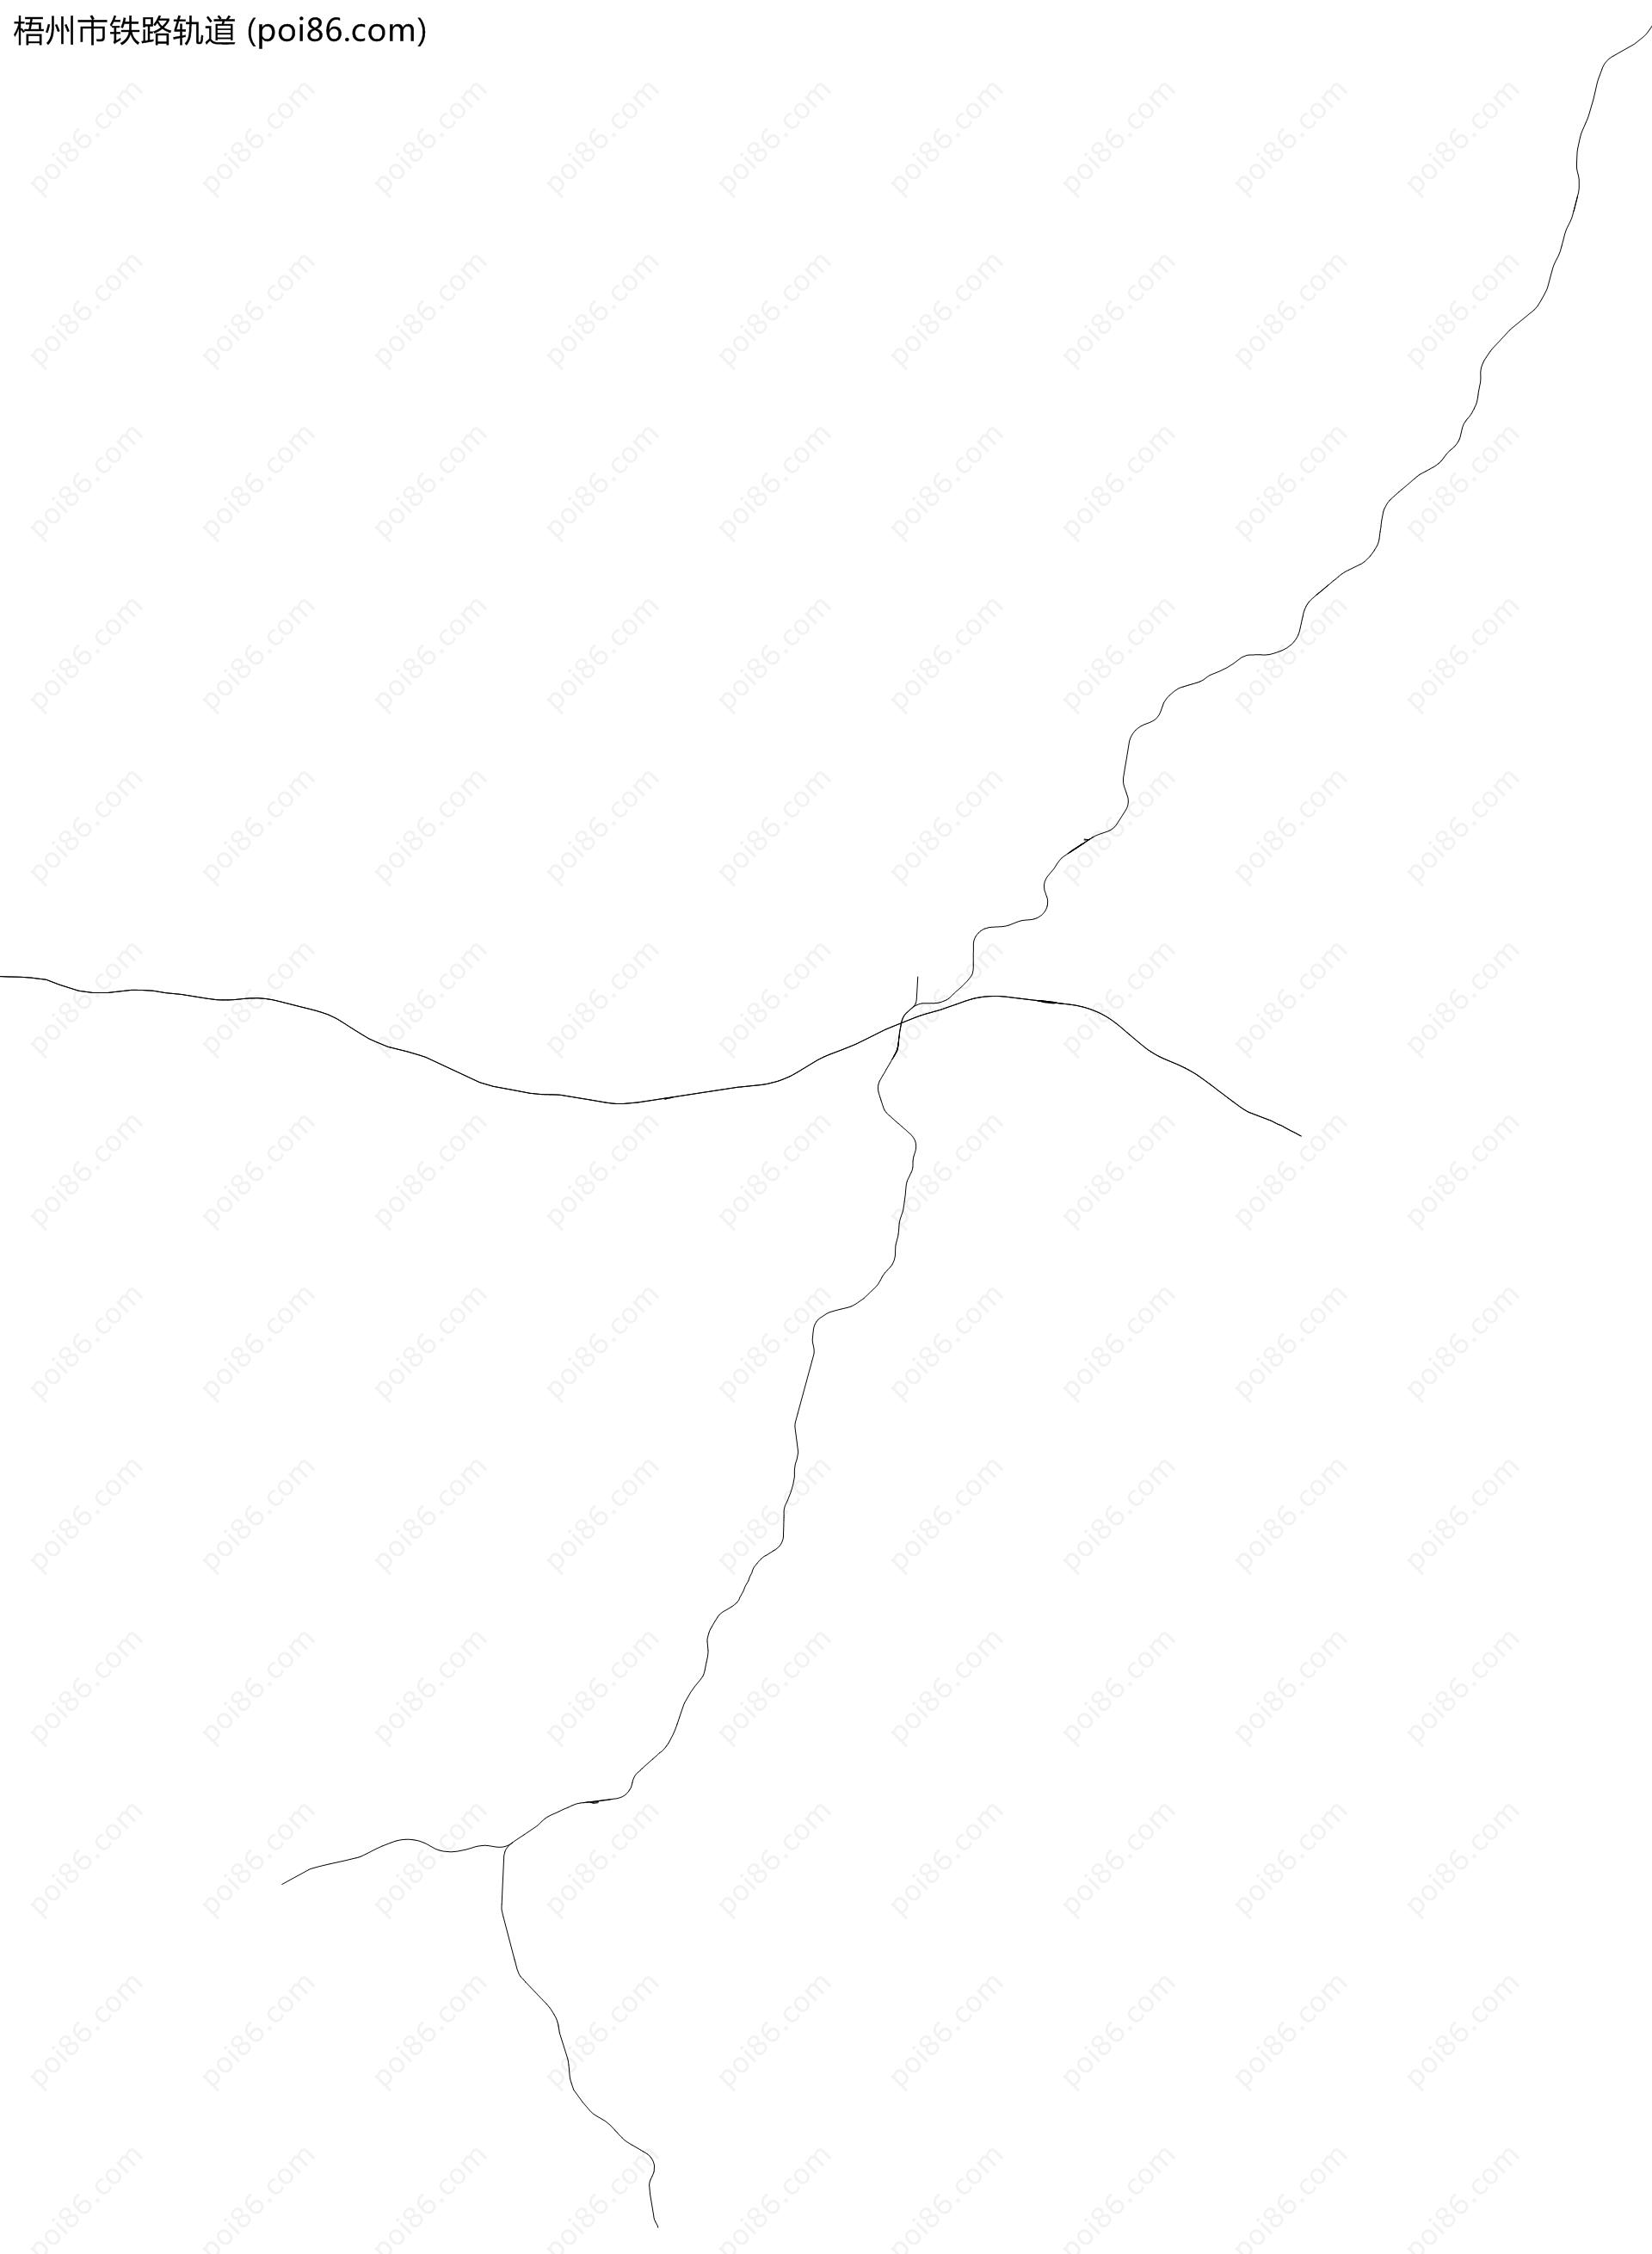 梧州市铁路轨道地图